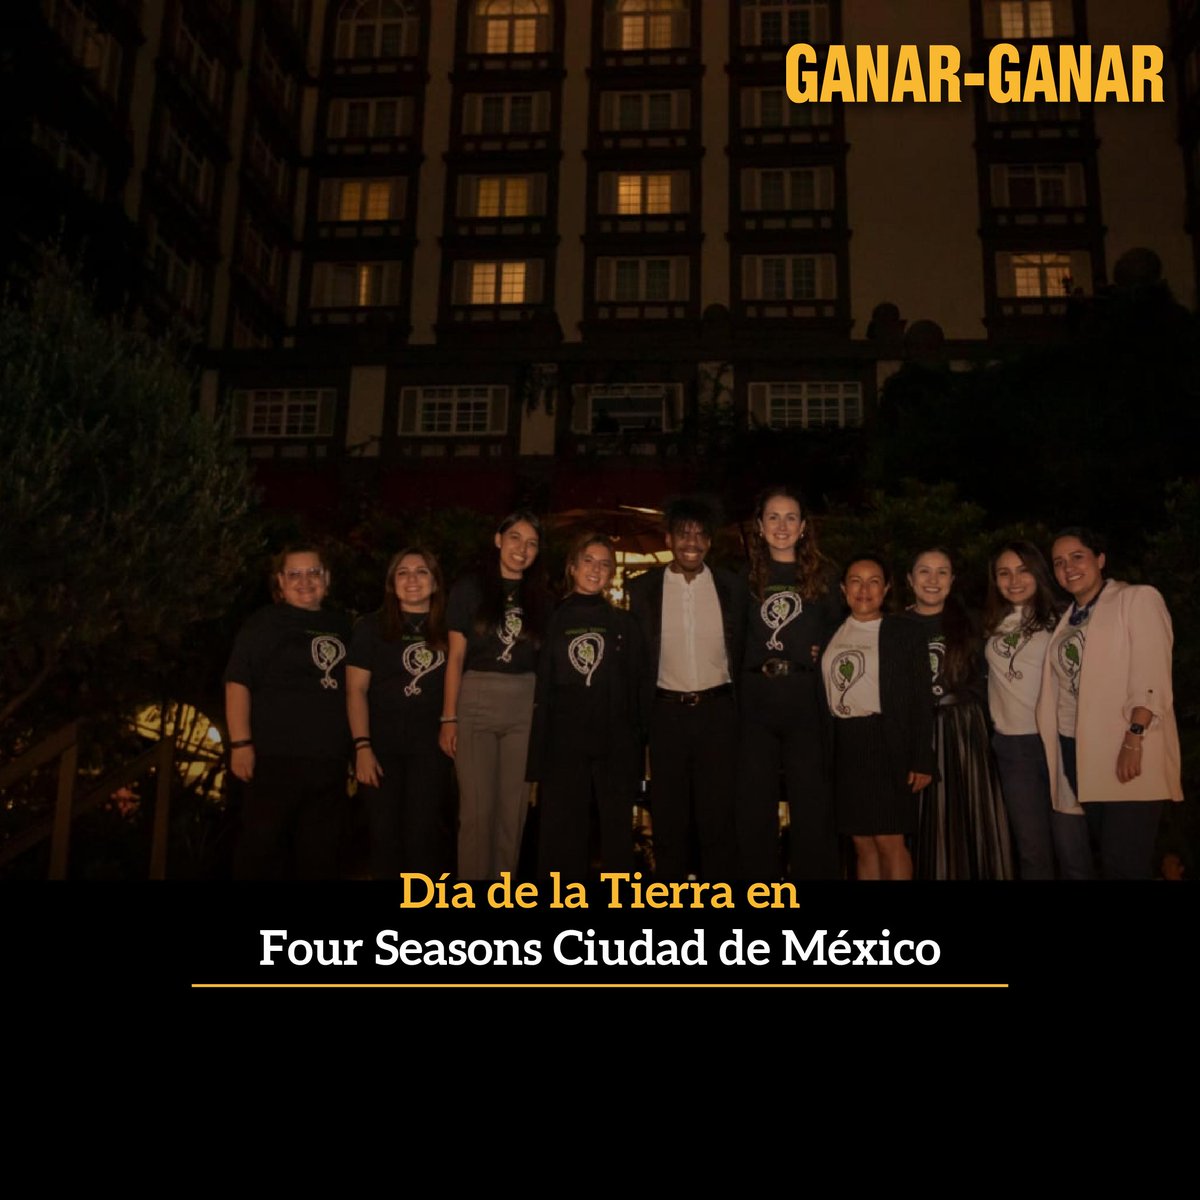 Para @FourSeasons #CiudadDeMéxico es muy importante cuidar el medio ambiente. Por eso, estamos conscientes de nuestro compromiso con el planeta. A continuación compartimos las acciones llevadas a cabo durante el #DíaDeLaTierra.

Conoce más: tinyurl.com/fkuk3hmp